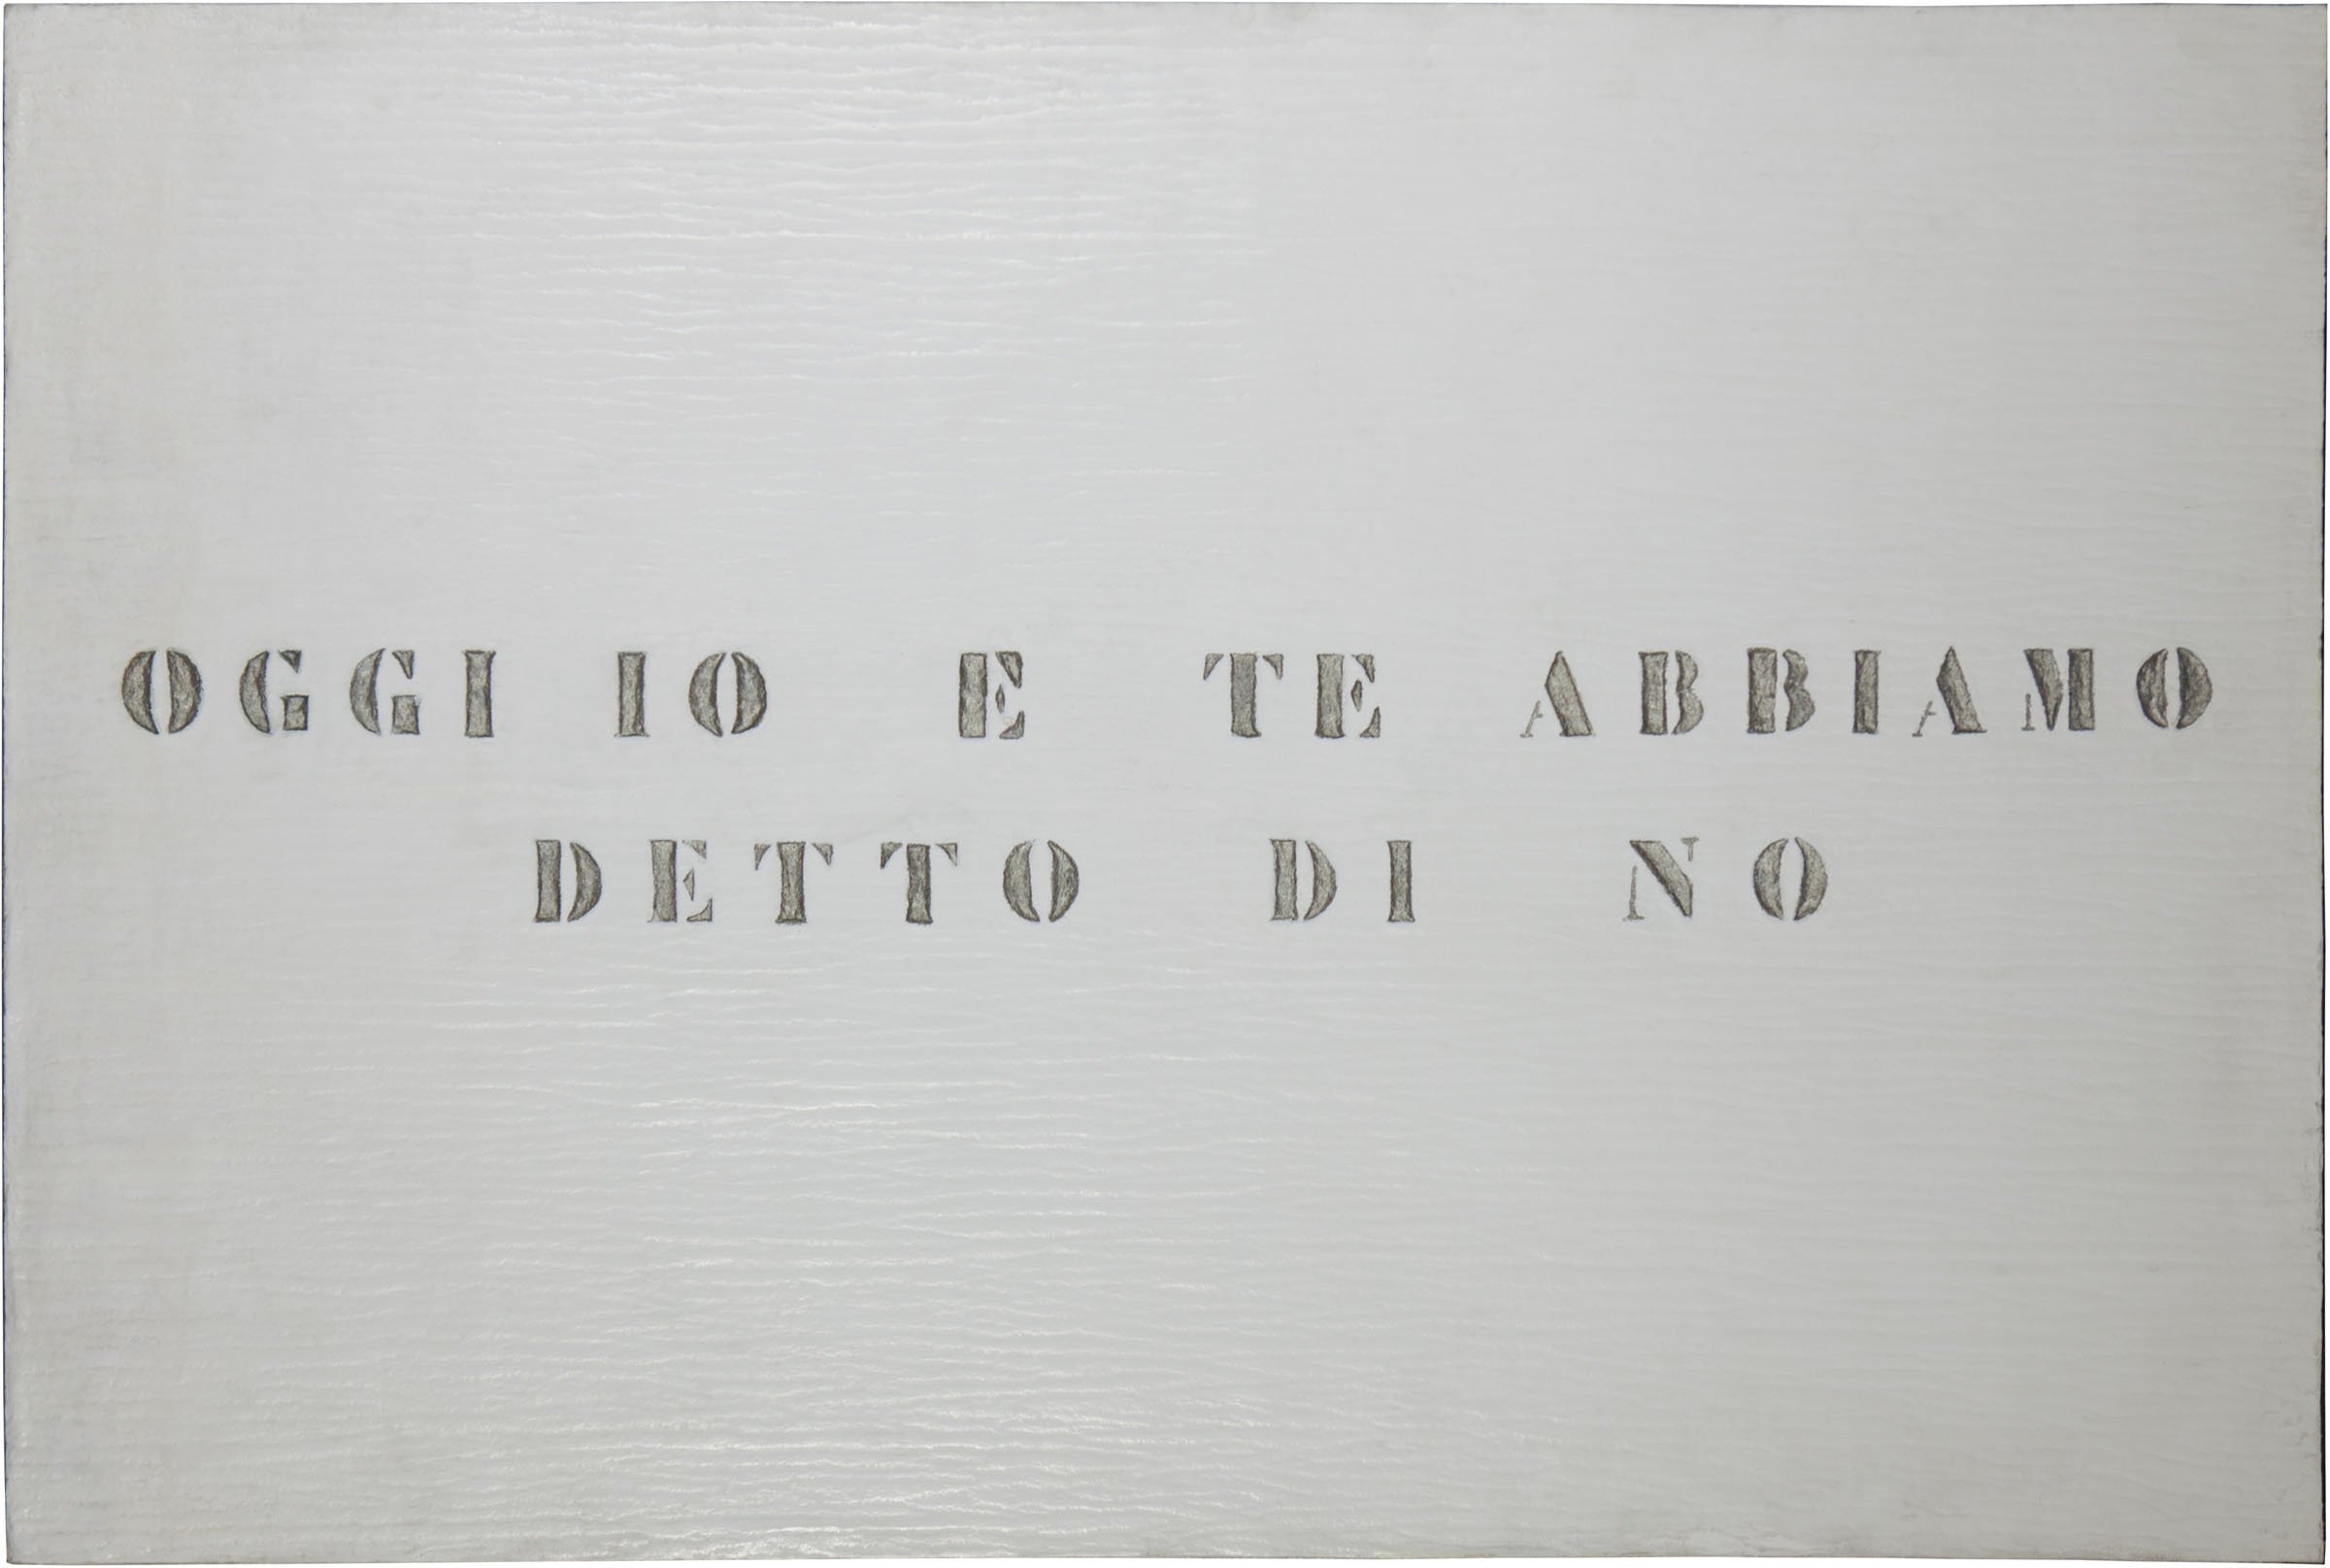 Vincenzo Agnetti, Ritratto, 1971 (80 x 120 cm). Courtesy Archivio Vincenzo Agnetti